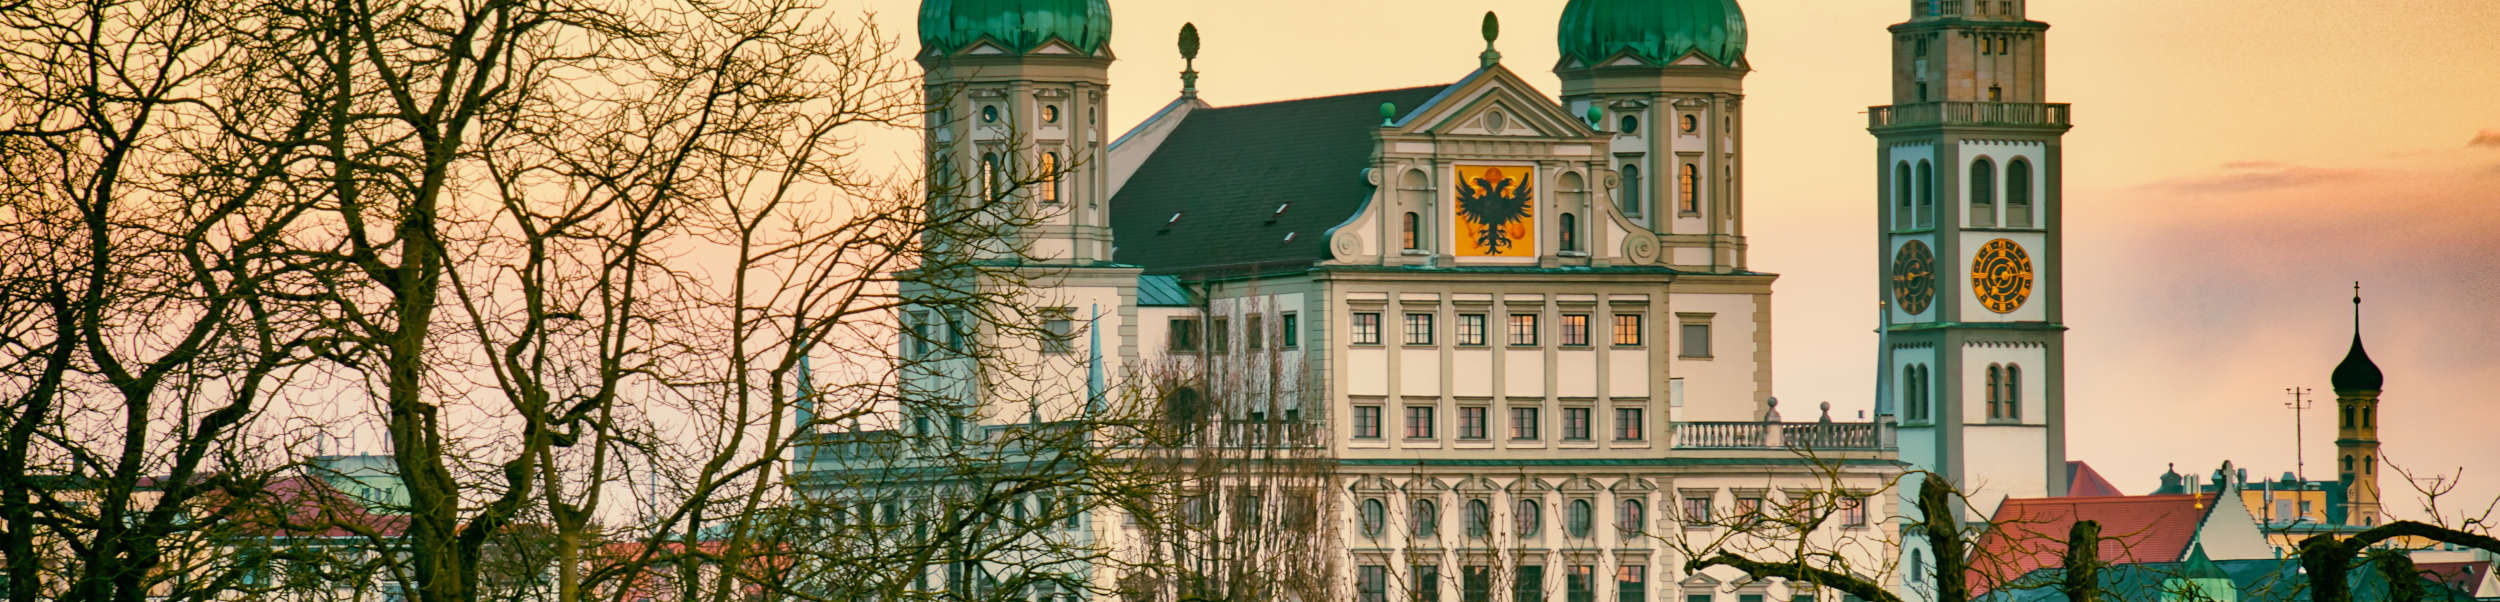 Das Bild zeigt aus der Ferne das Rathaus in Augsburg